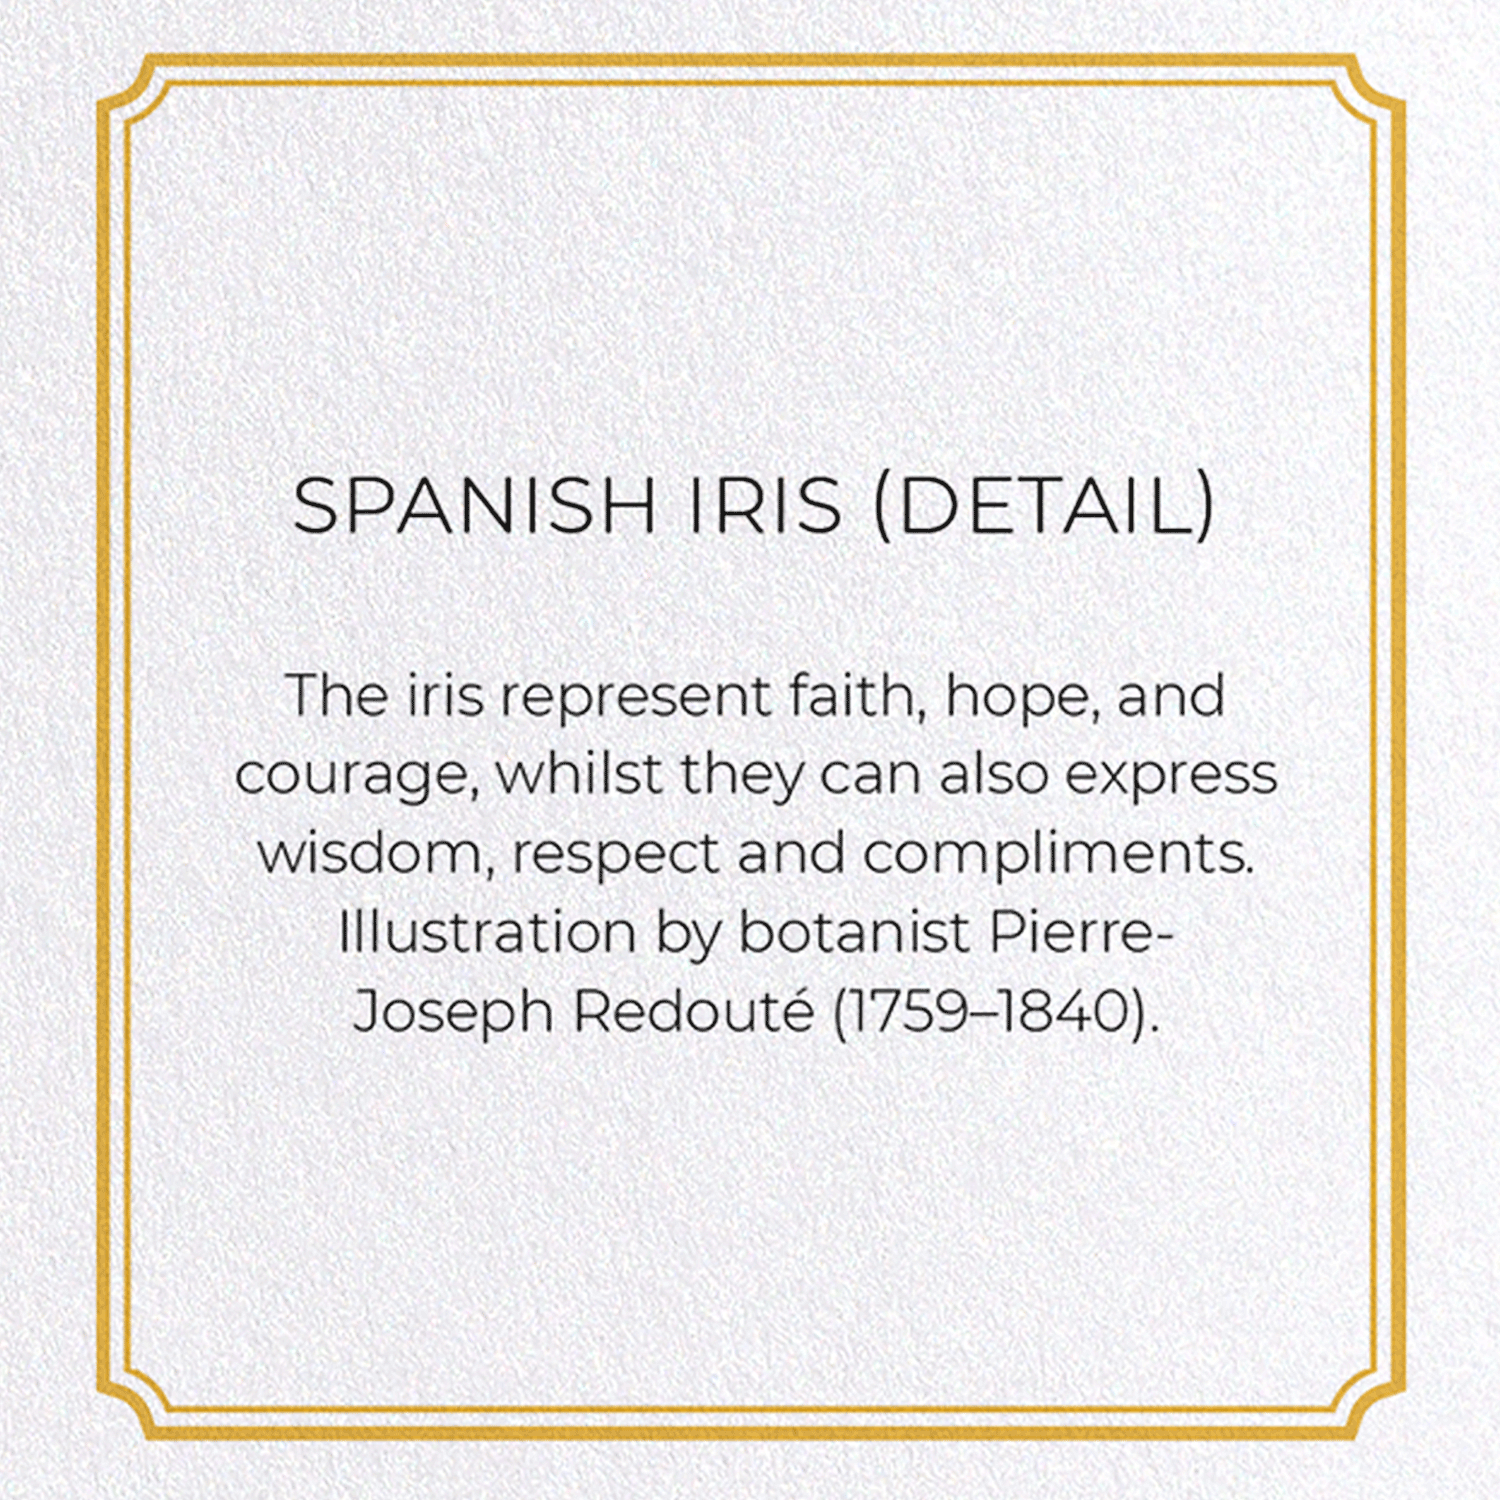 SPANISH IRIS